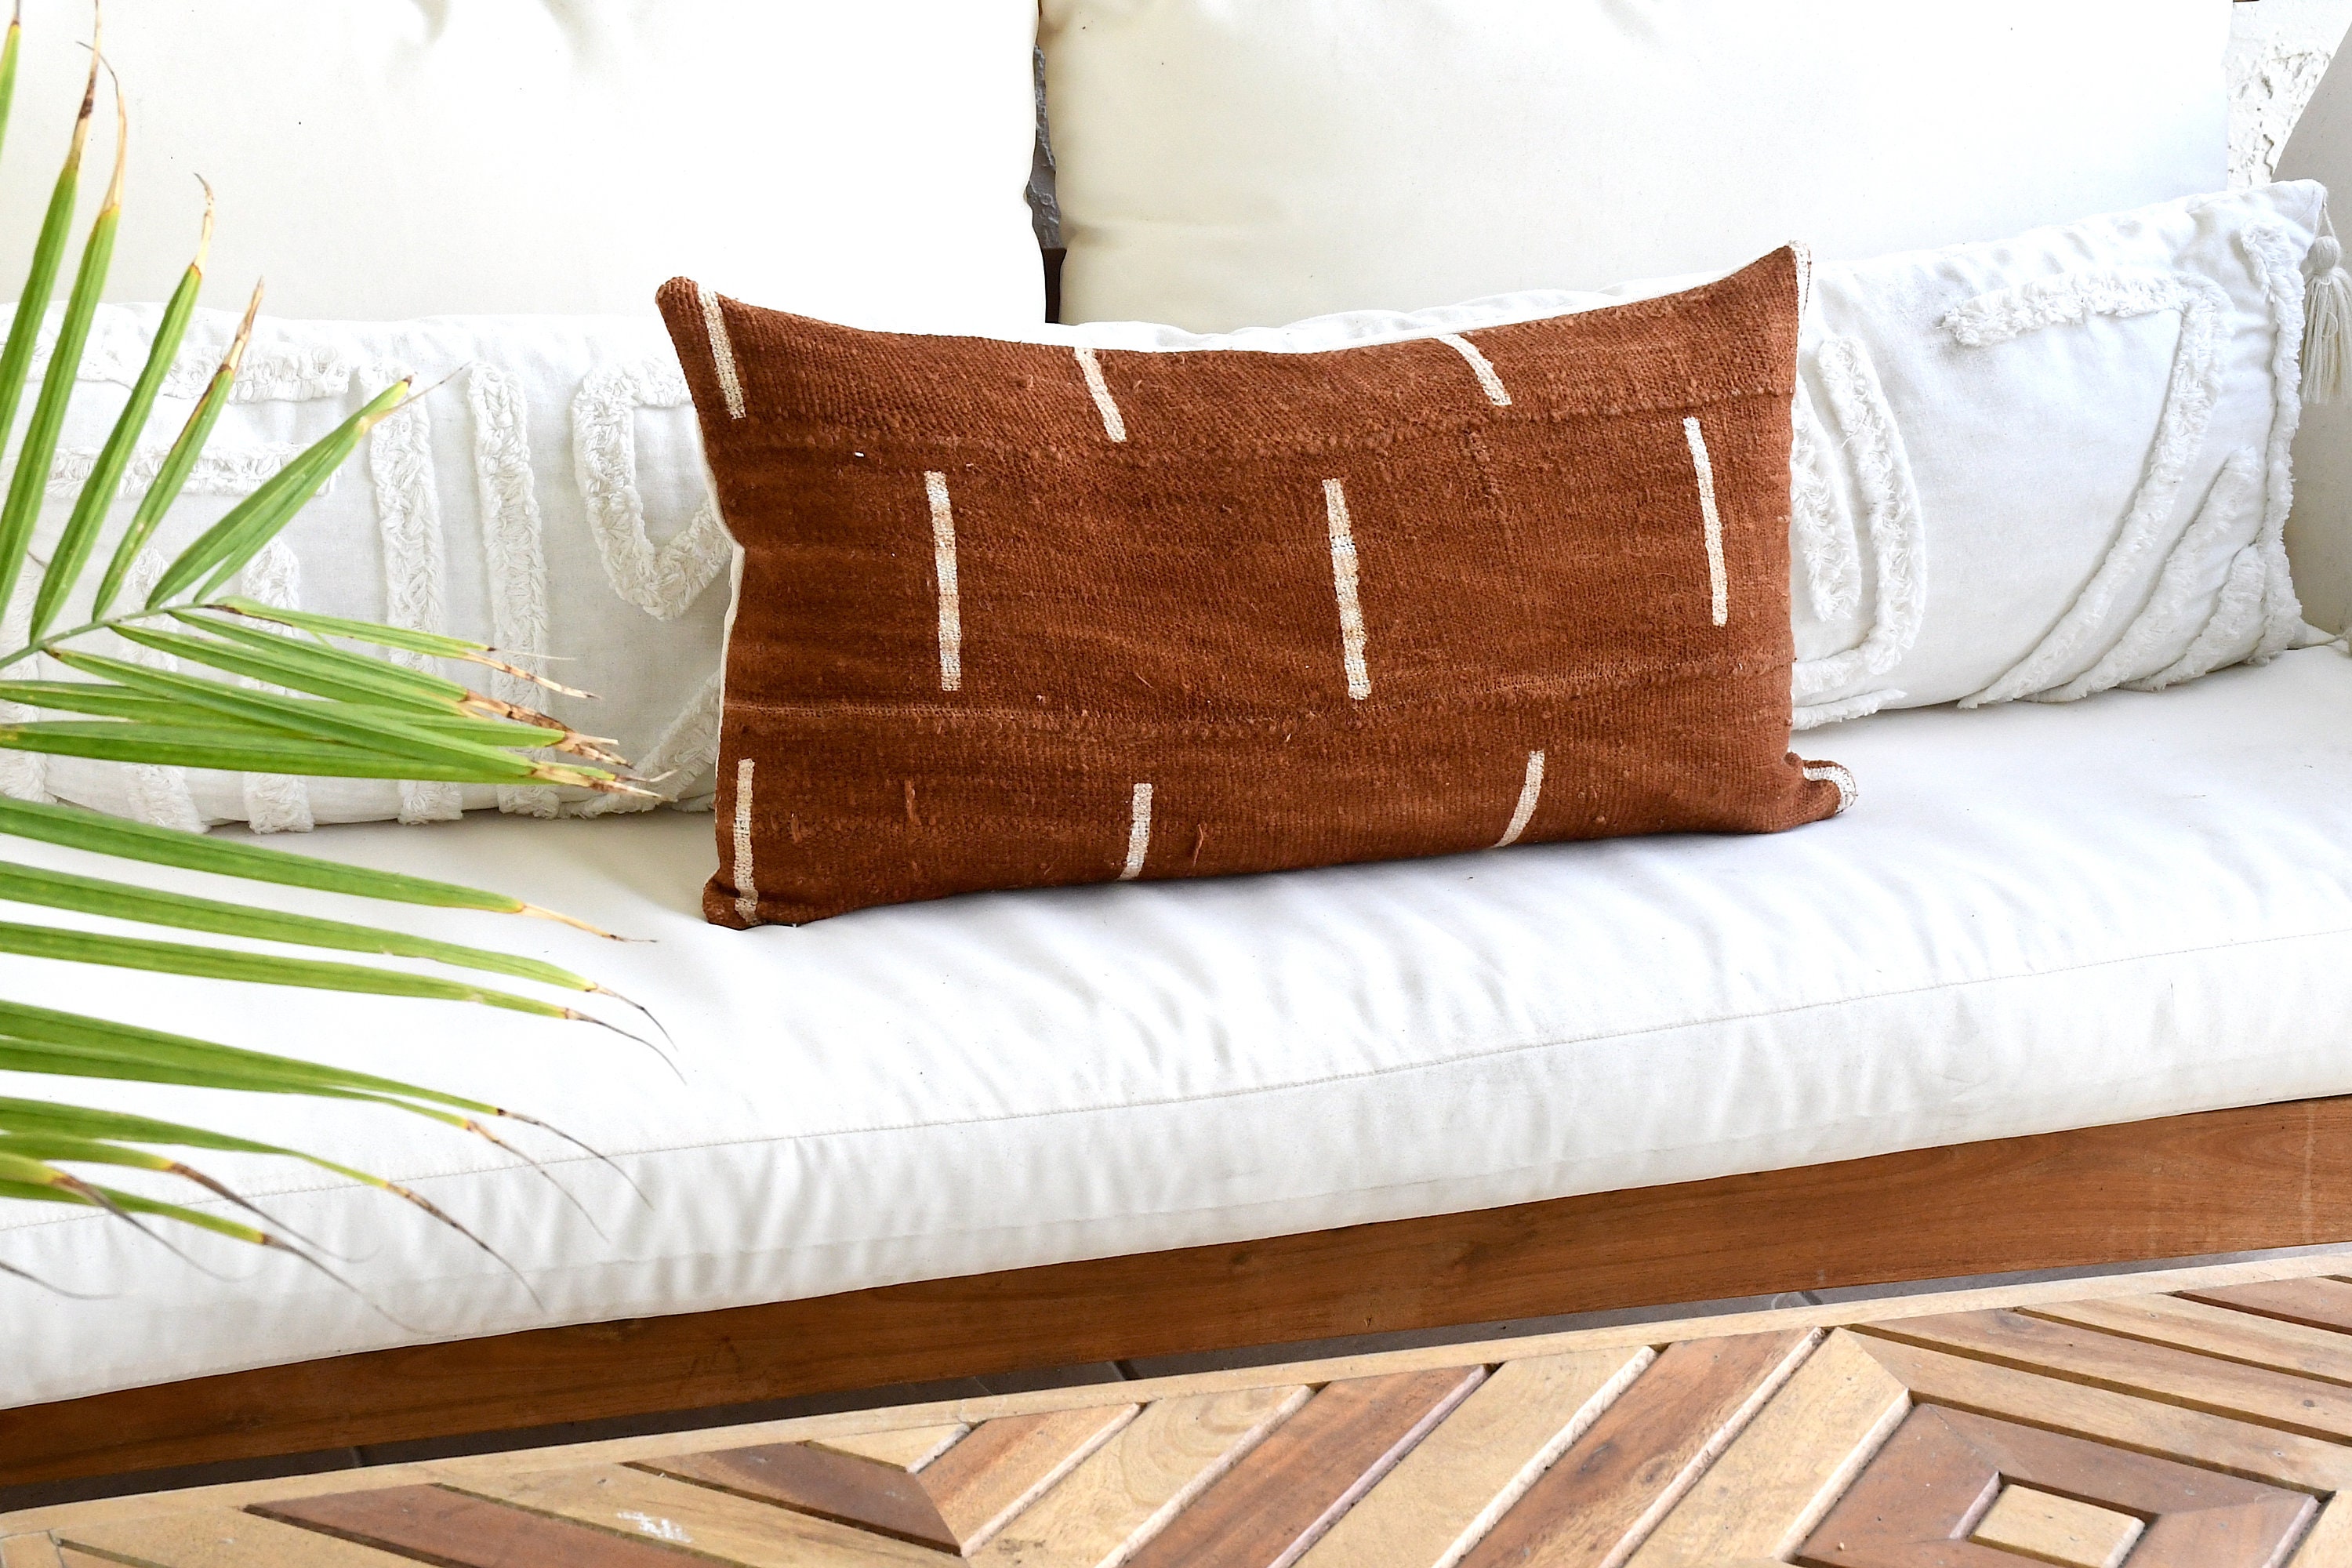 Classic Boho Sofa Bundle - Boho style throw pillows – EVERAND